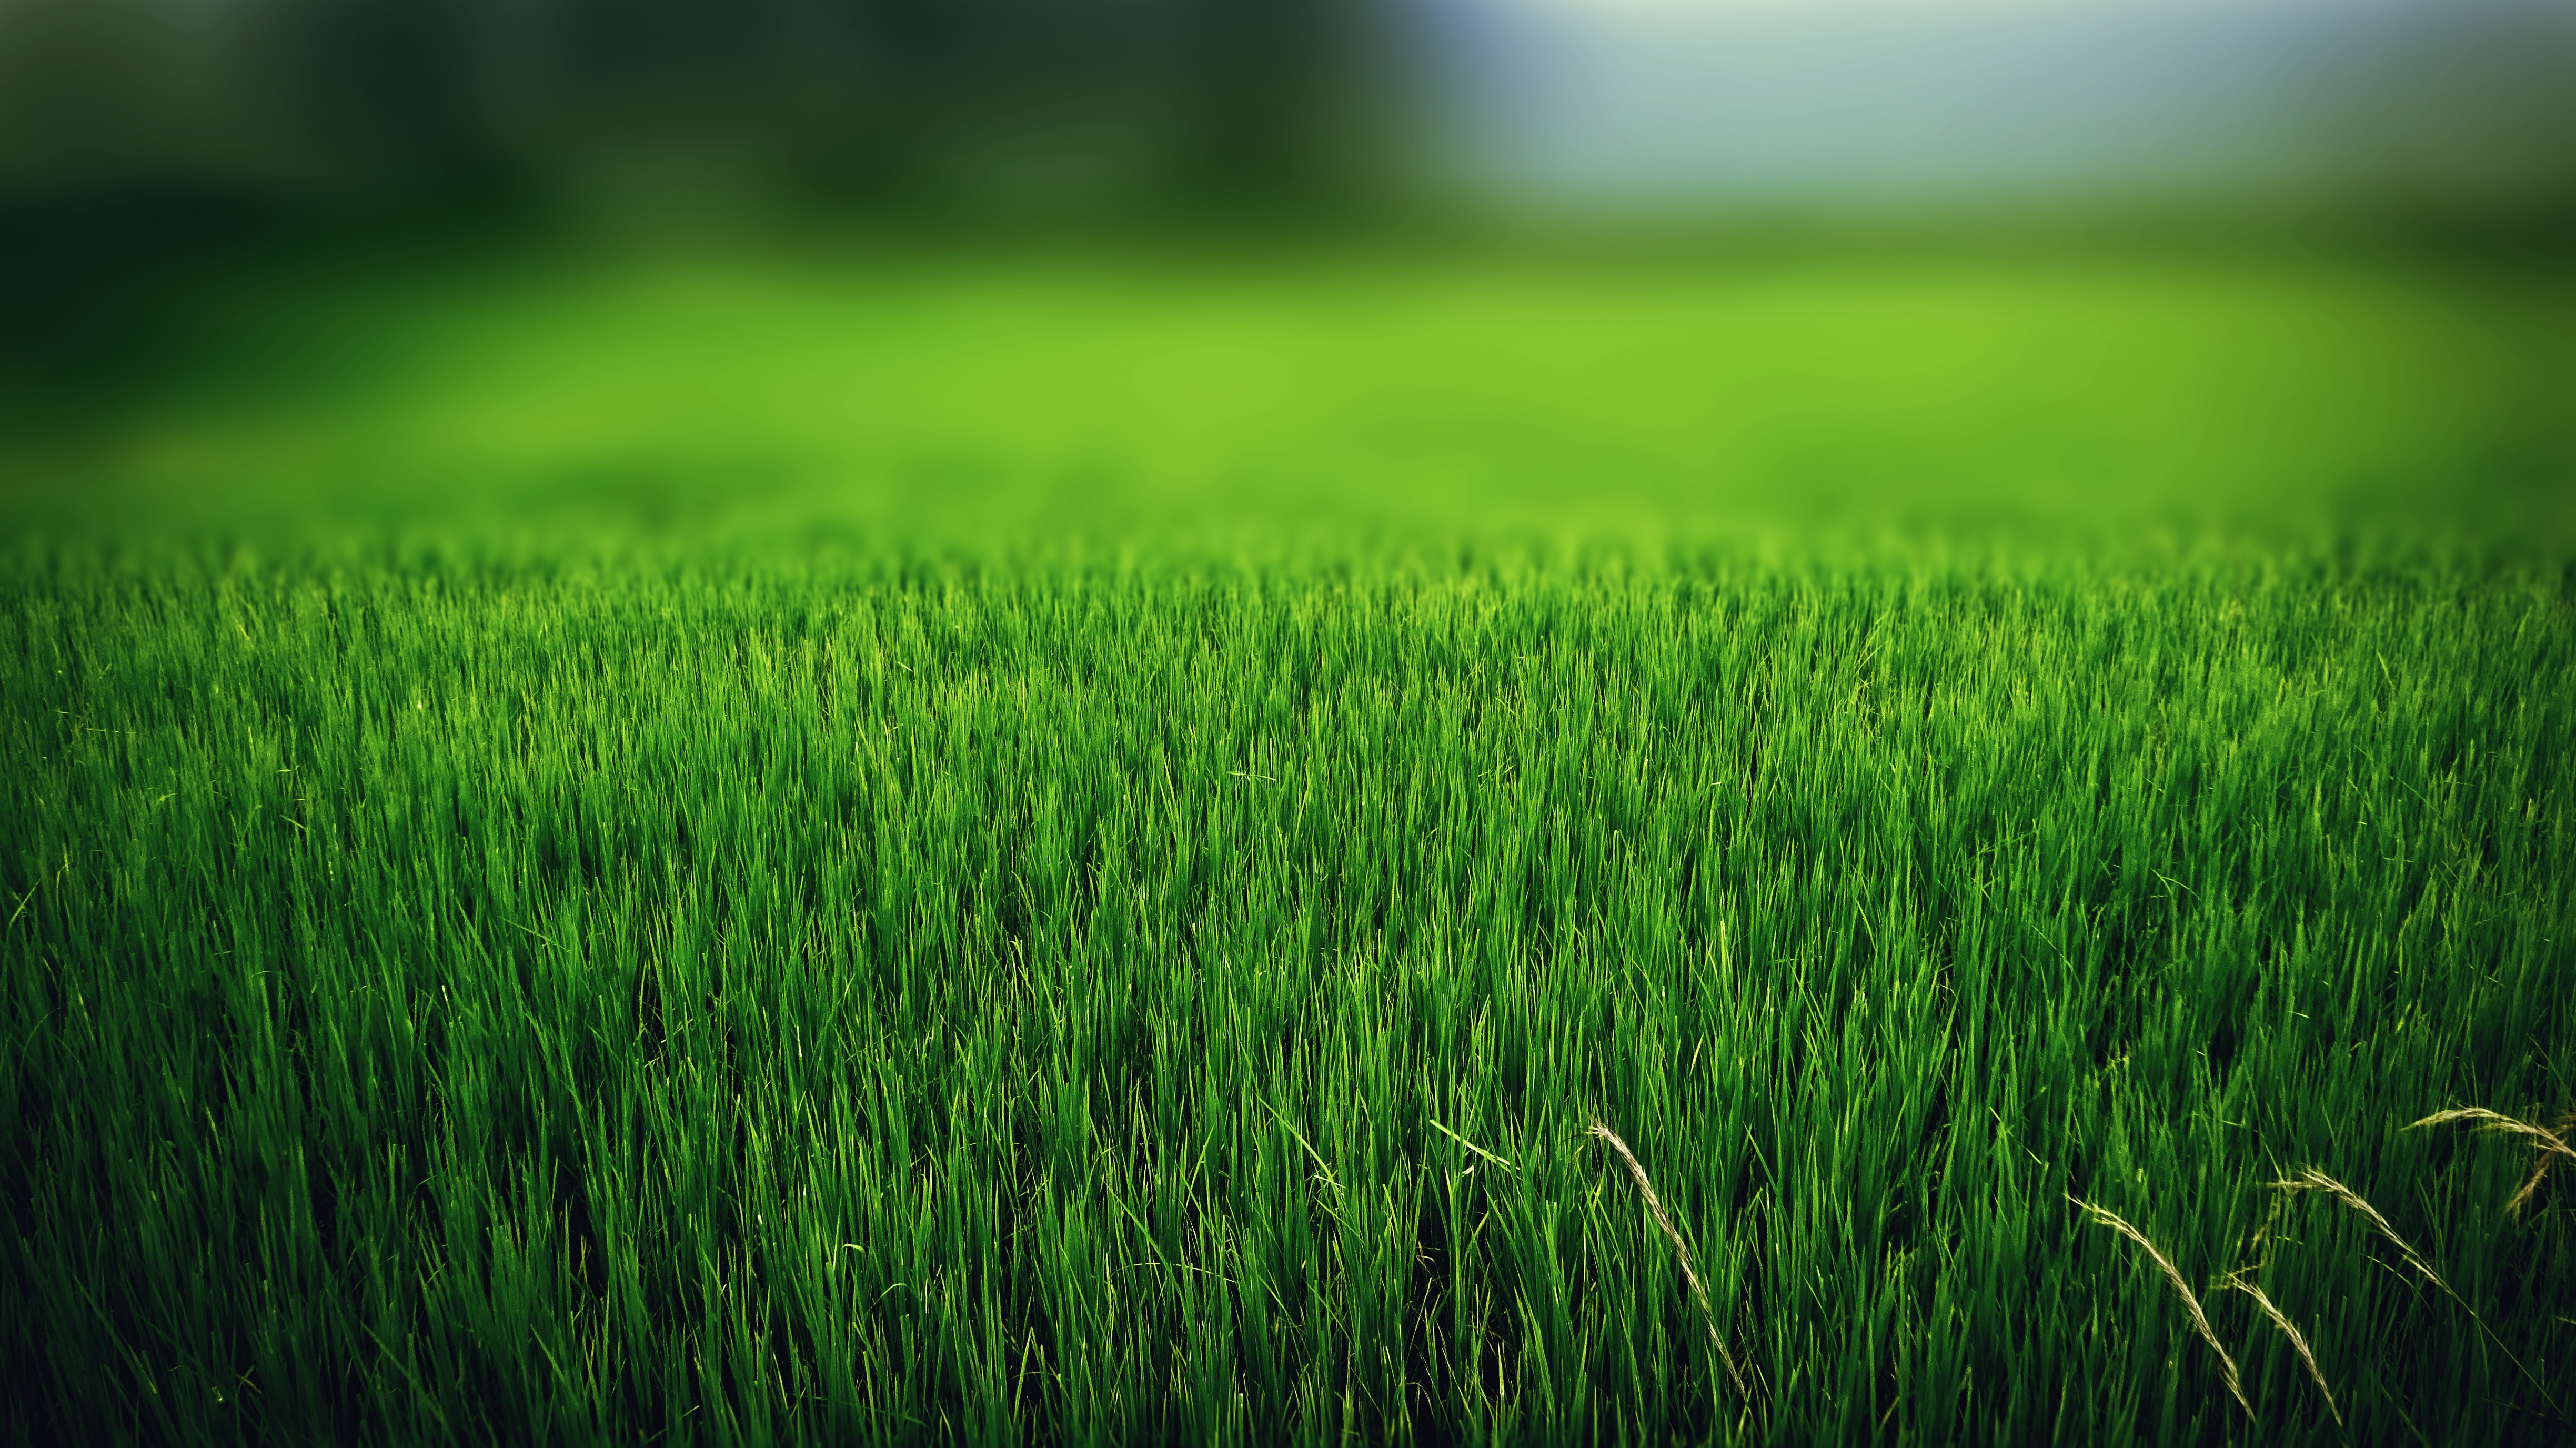 Green grass field photo